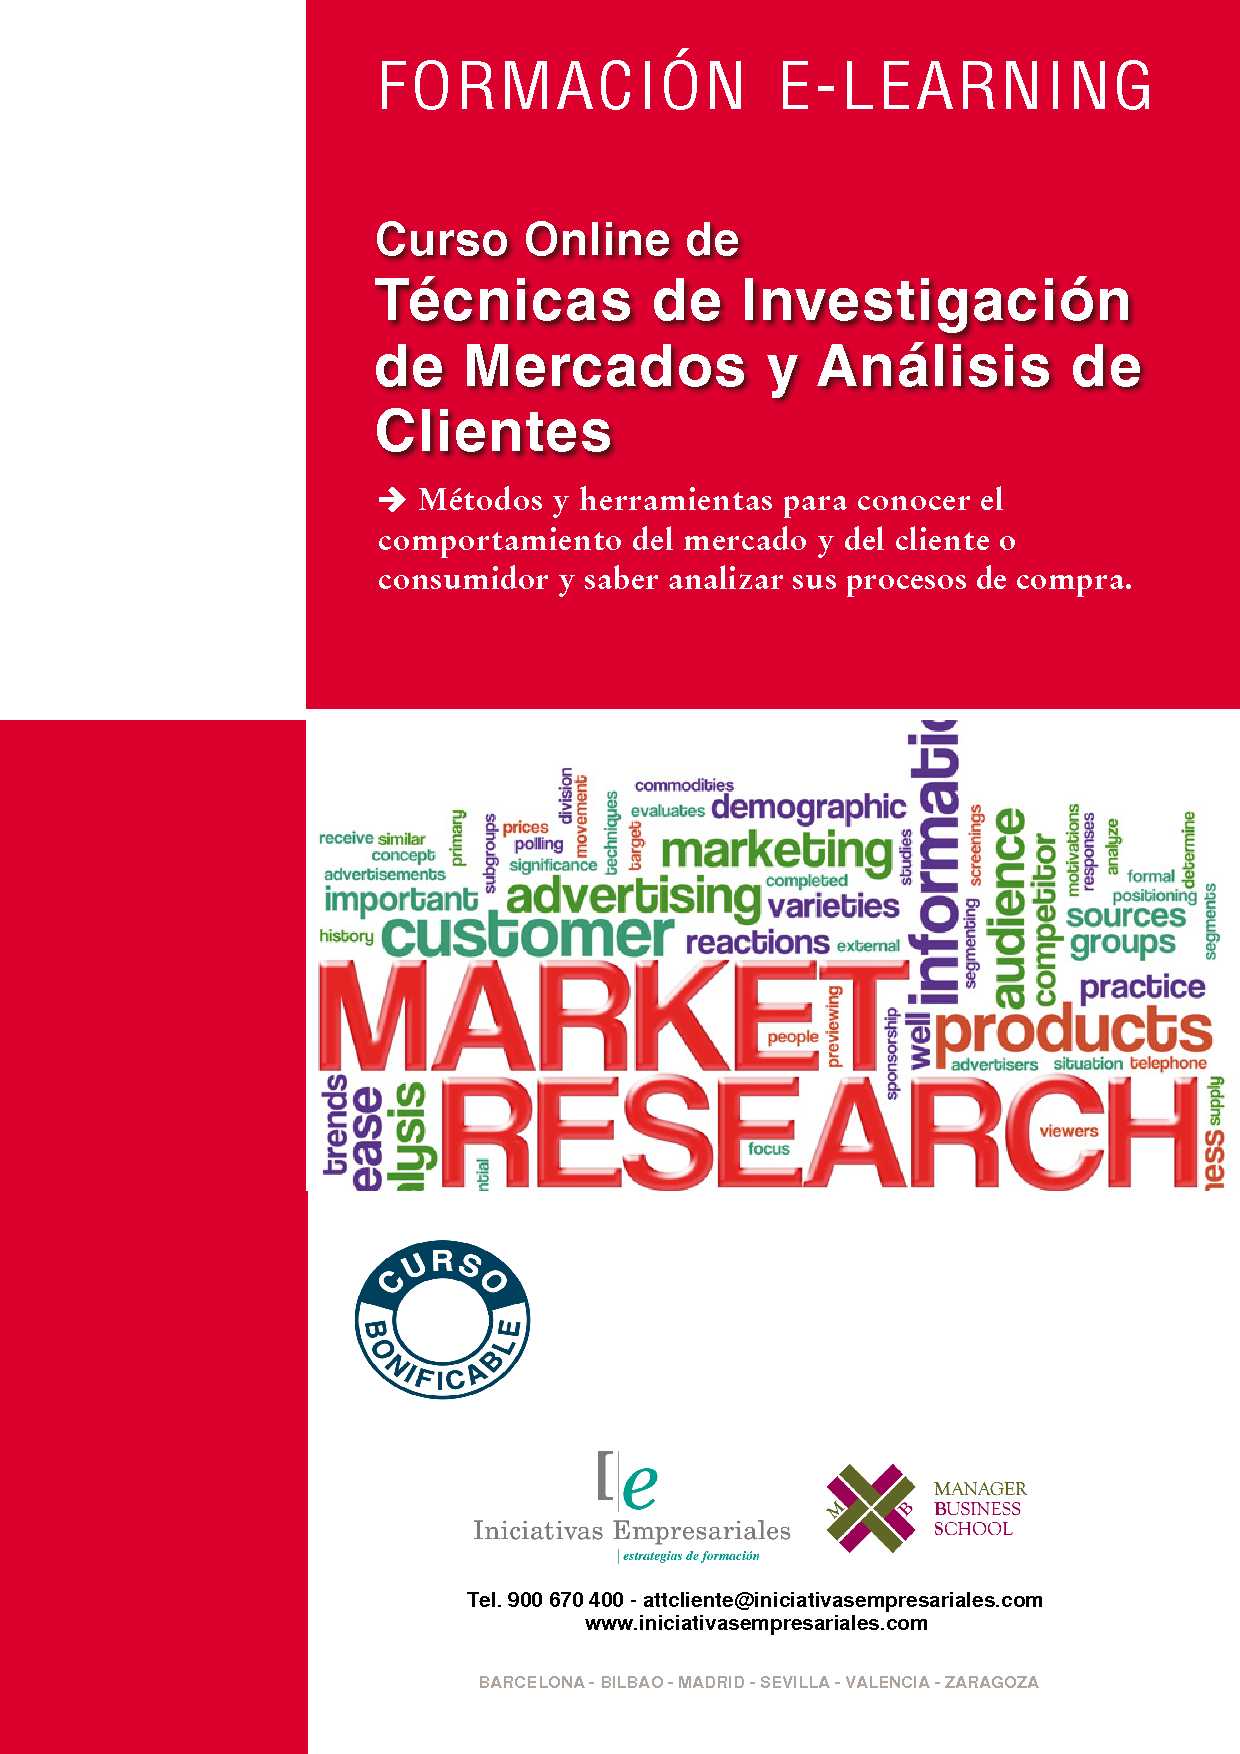 Técnicas de Investigación de Mercados y Análisis de Clientes